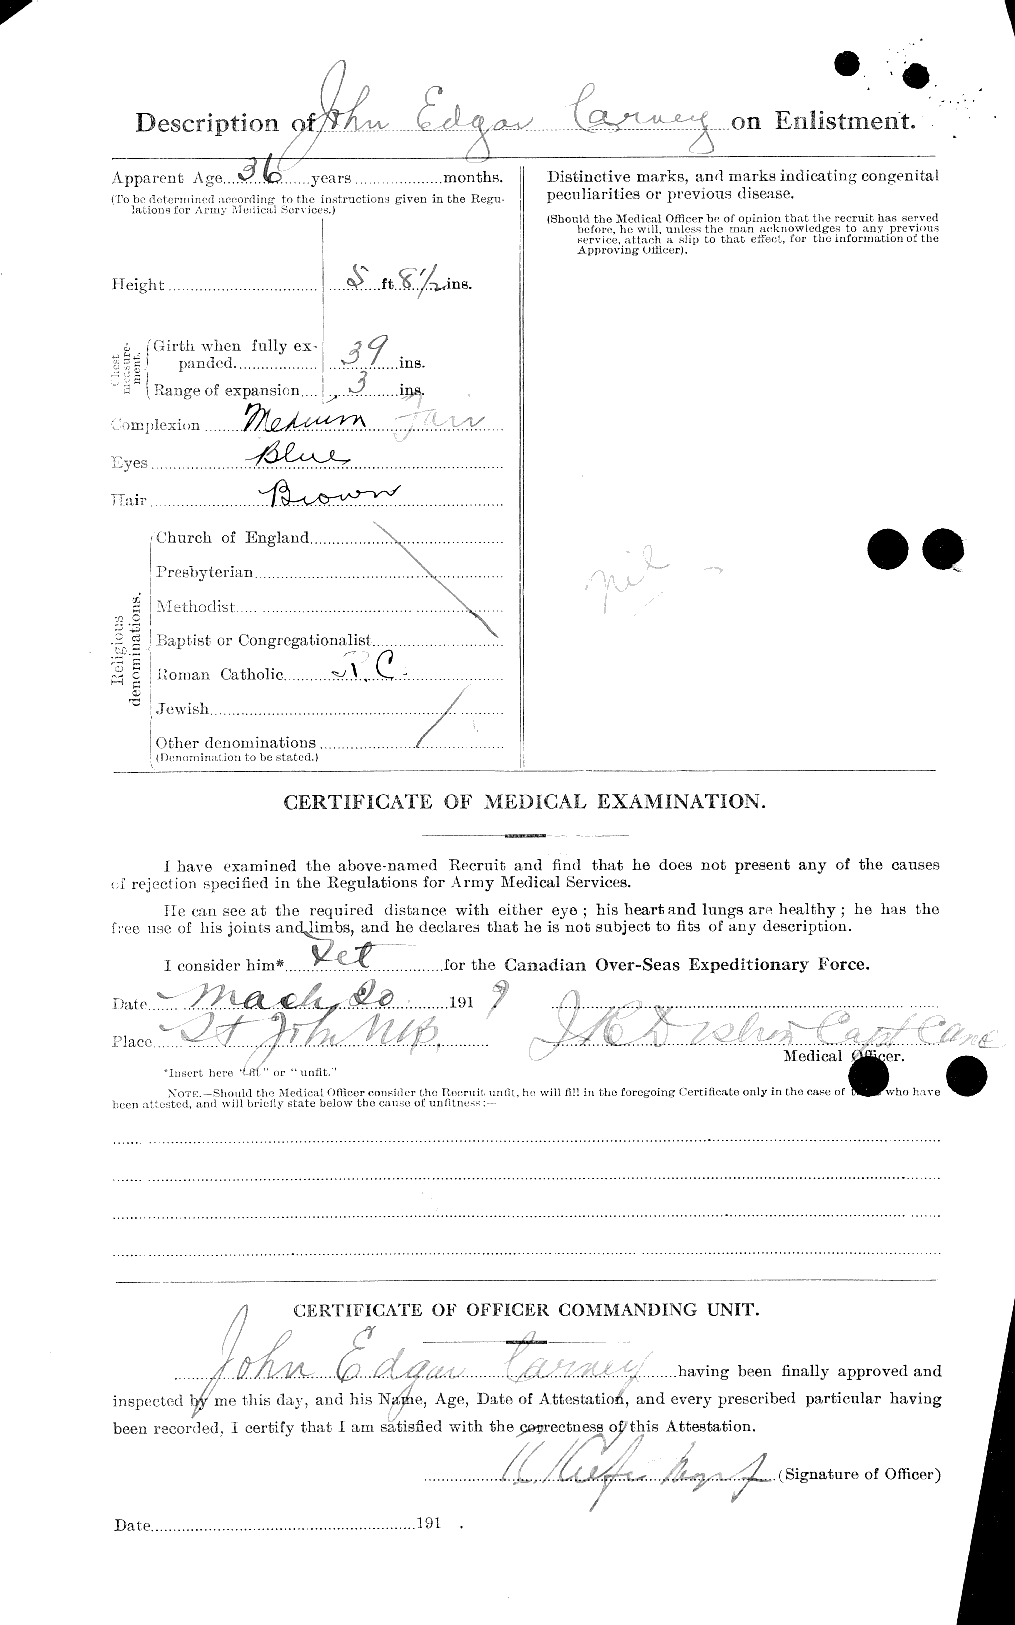 Dossiers du Personnel de la Première Guerre mondiale - CEC 009981b